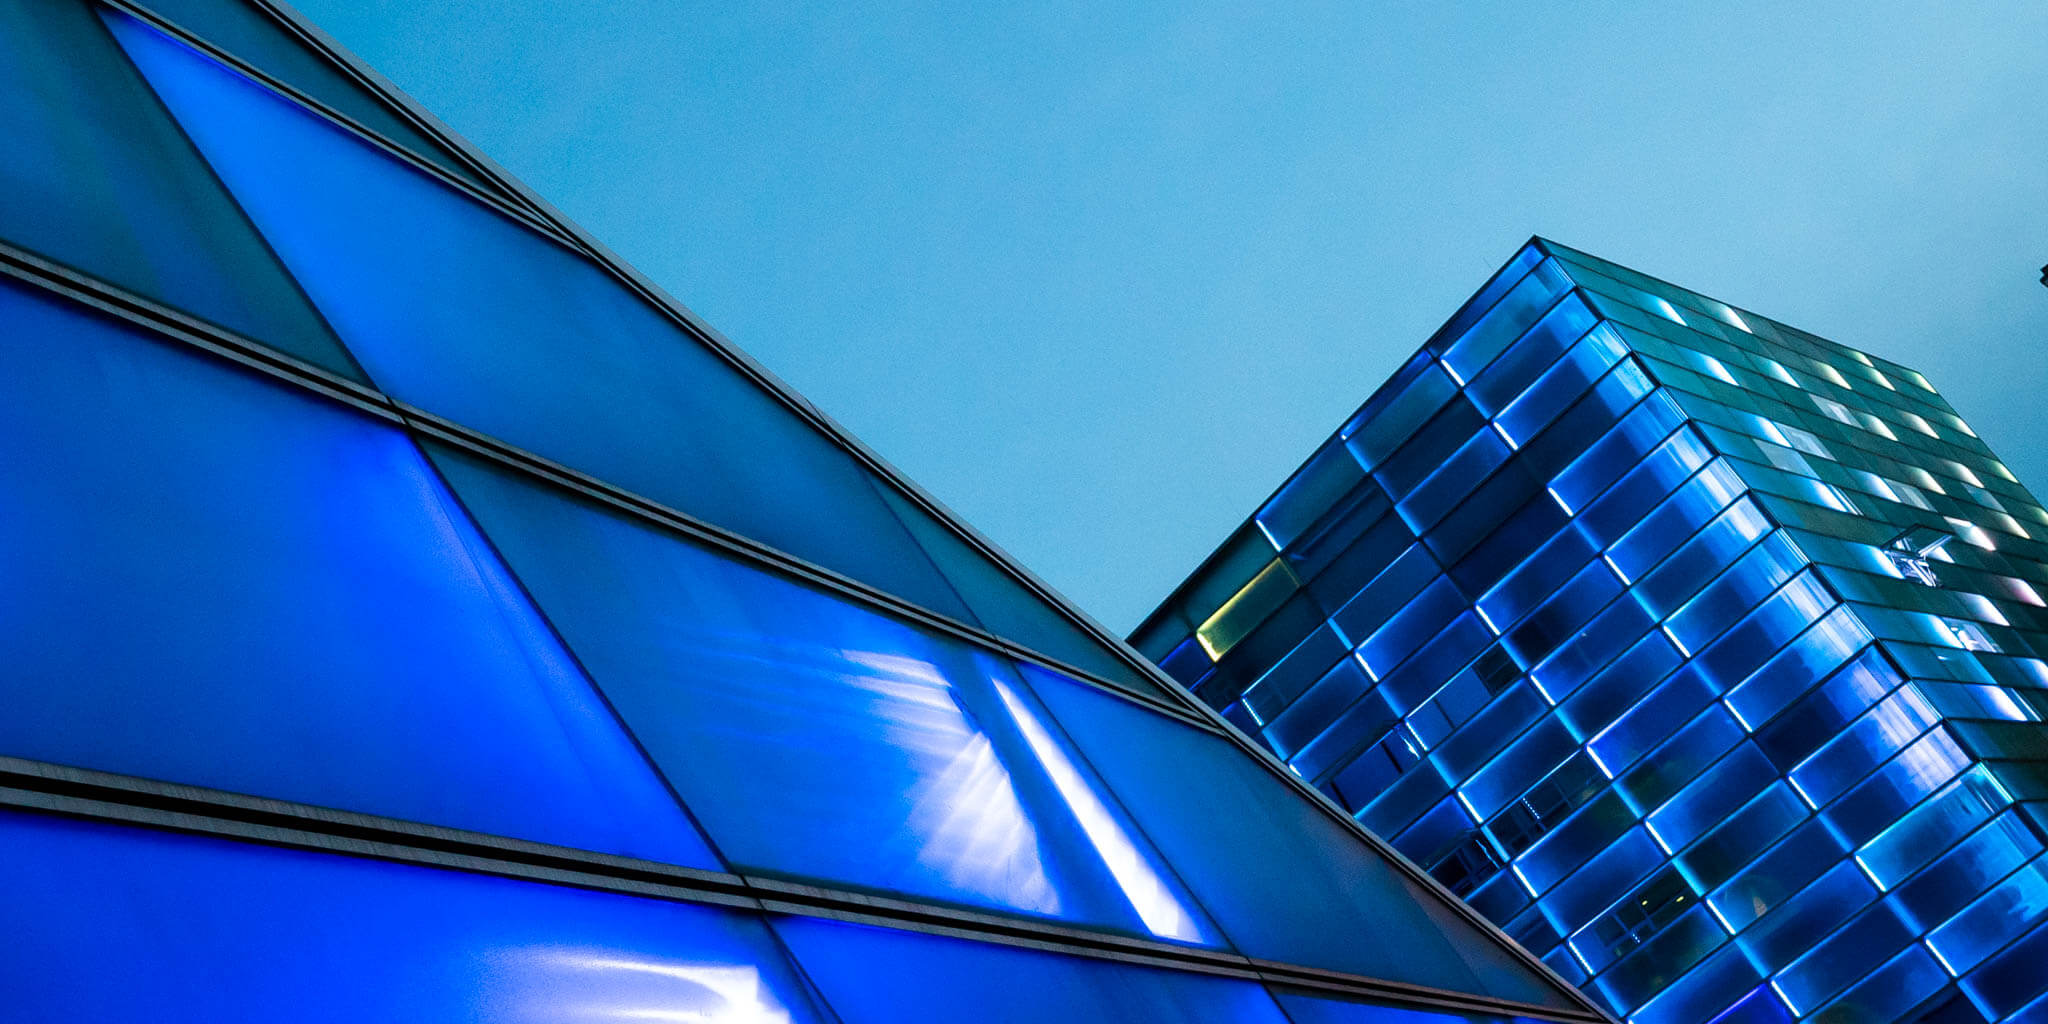 Play the façade! Die 5.100 Quadratmeter Ars Electronica-Fassade sind ein Medium für sich: Verbinden Sie sich über Wifi mit dem Gebäude, um die 38.500 LEDs audiovisuell zu gestalten und Ihre Lieblingsmusik über das Audiosystem abzuspielen.